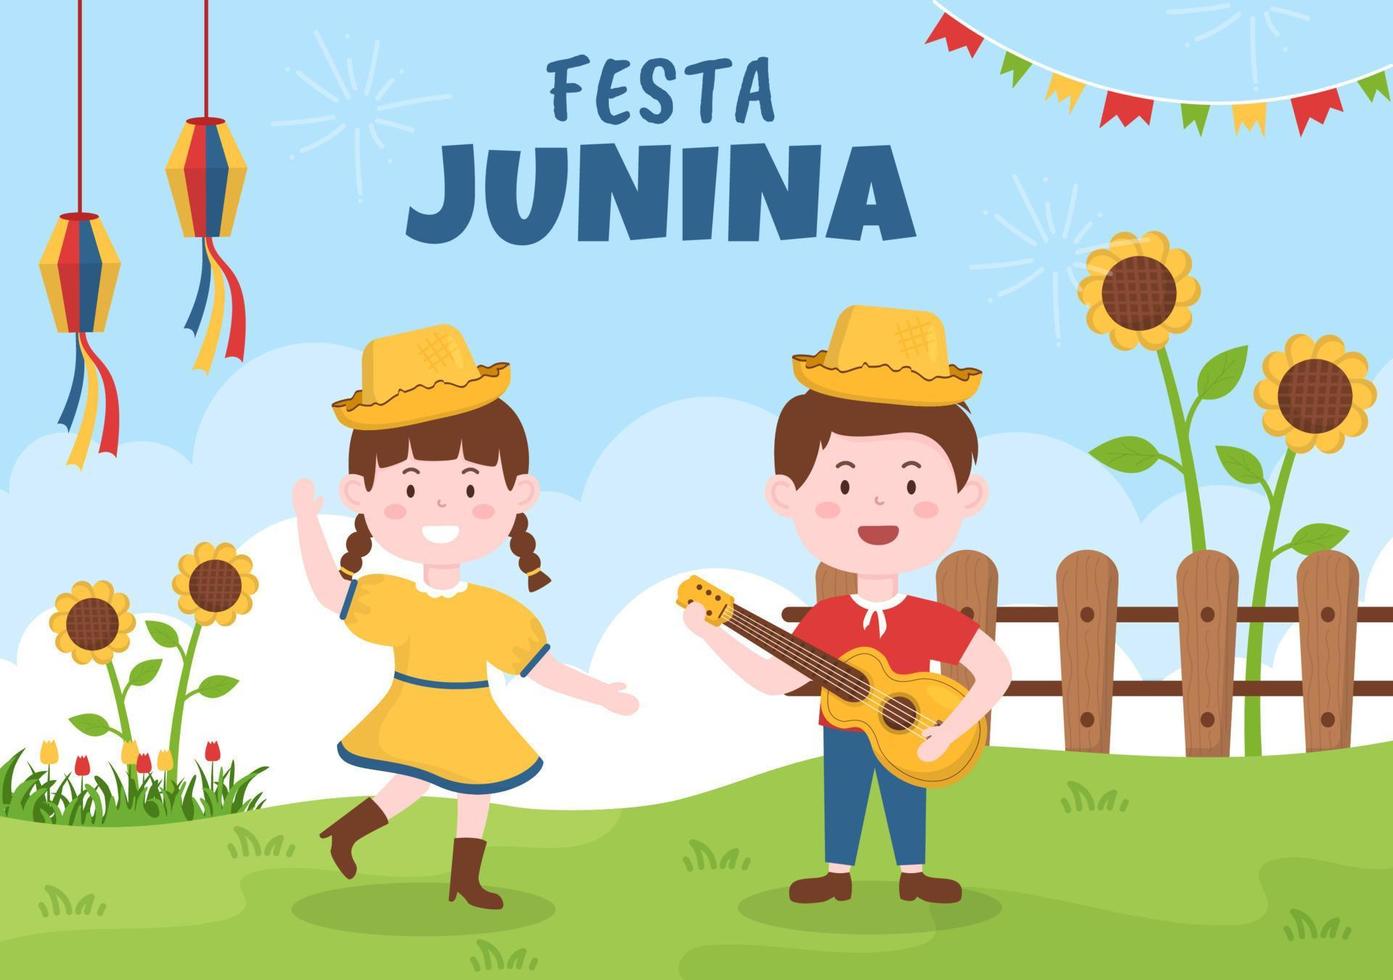 festa junina o sao joao celebrazione fumetto illustrazione resa molto vivace cantando, ballando samba e giocando a giochi tradizionali provengono dal brasile vettore